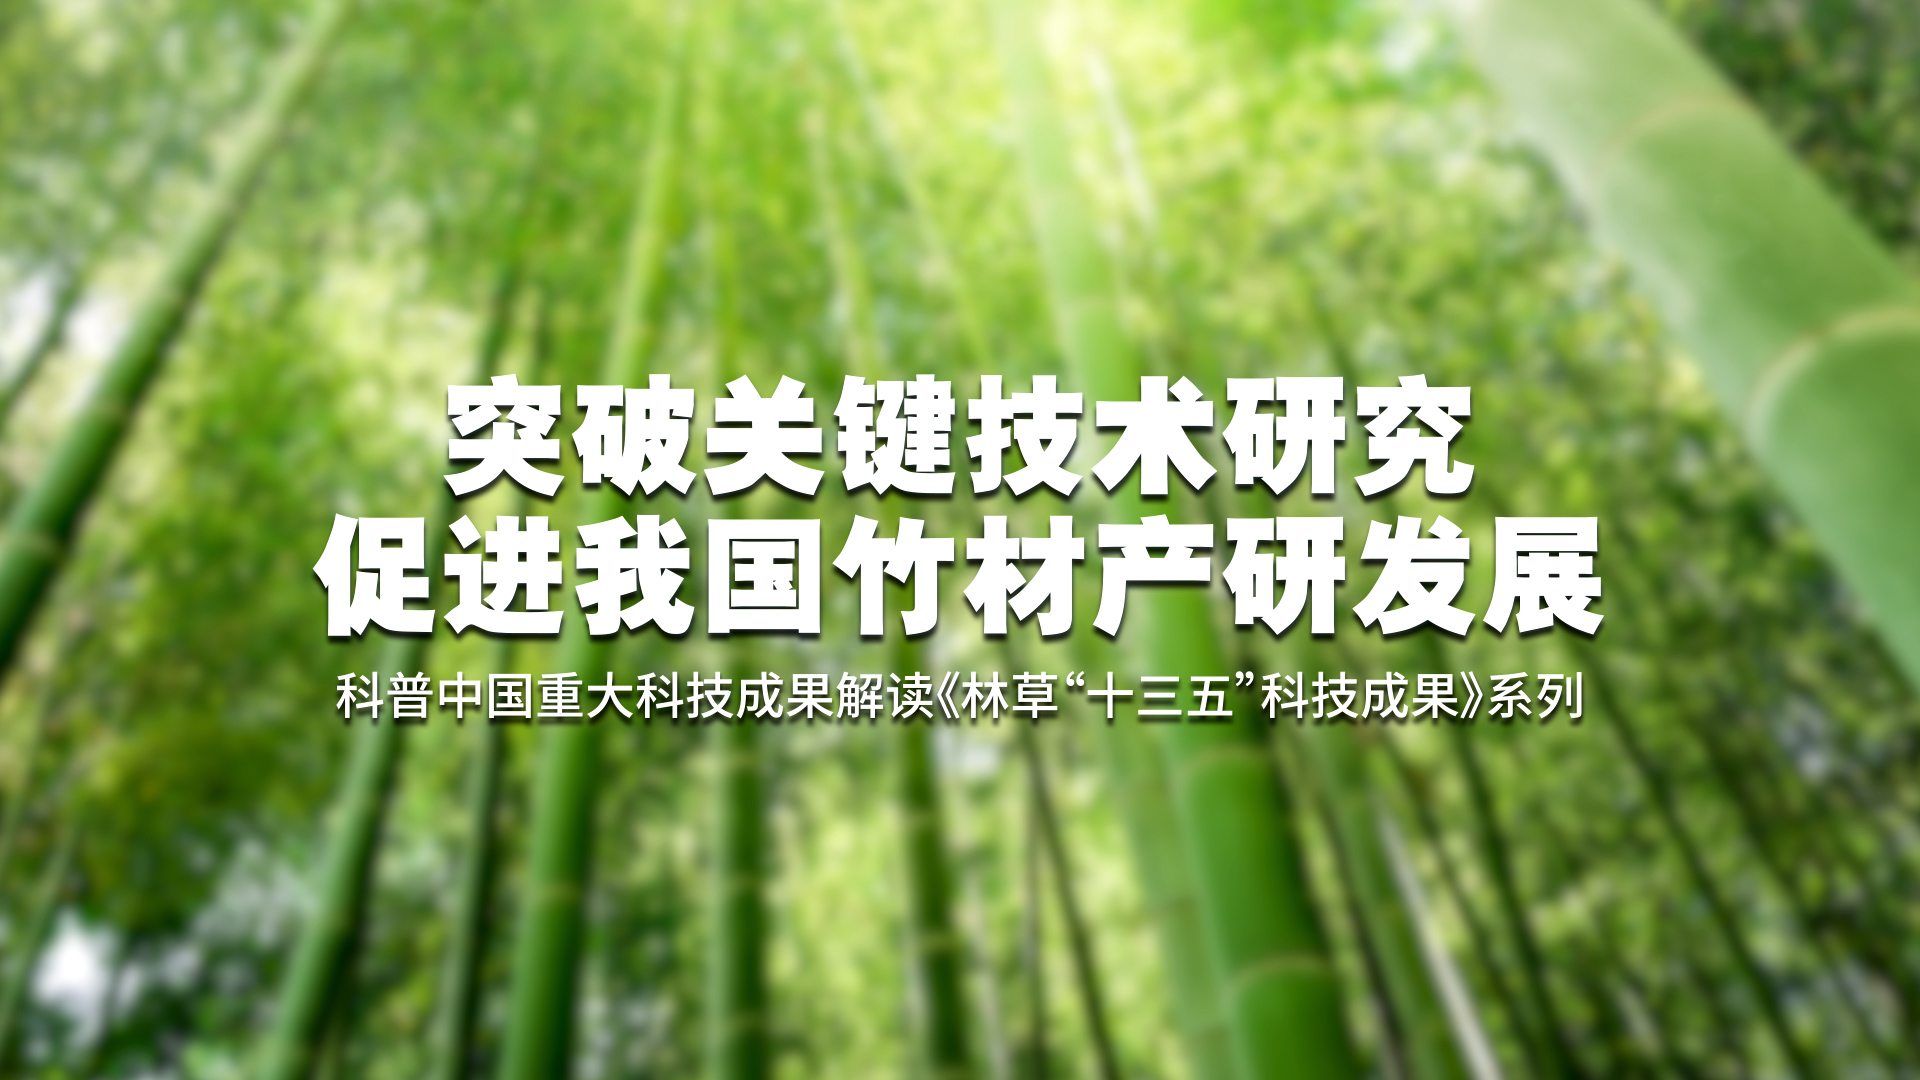 突破关键技术研究 促进我国竹材产研发展